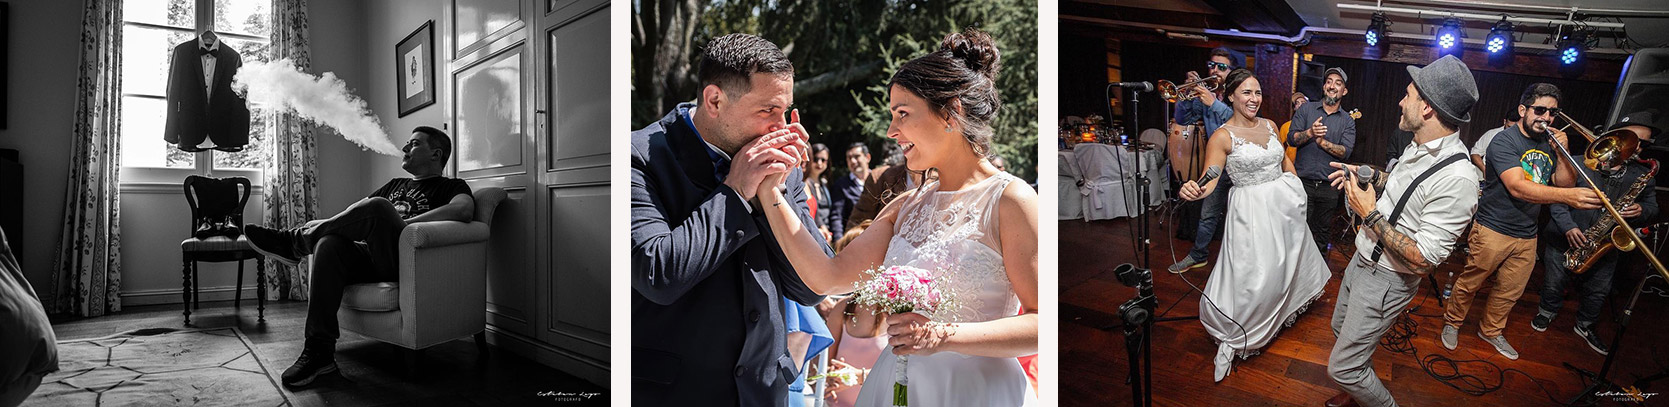 Fotos de preparativos, ceremonia y fiesta boda por el fotógrafo Esteban Lago